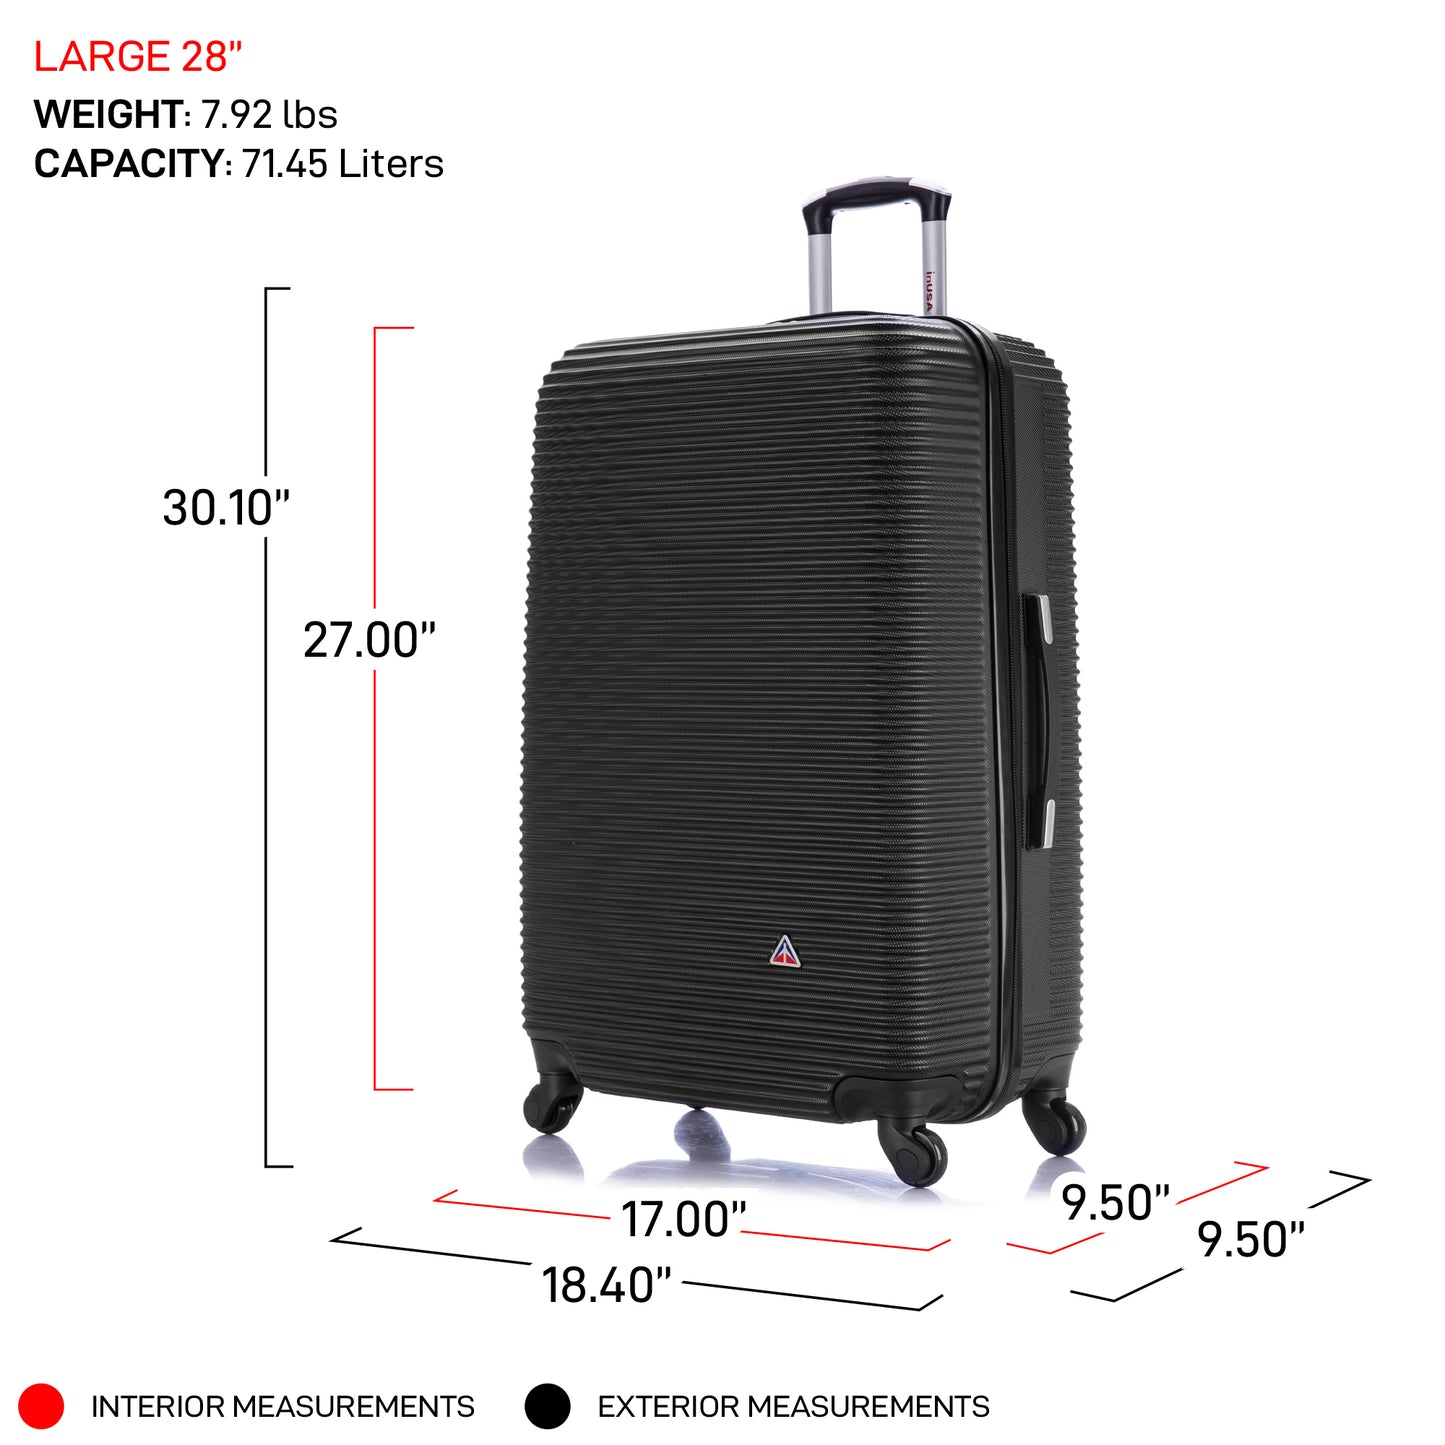 Royal 28 Inch Large Hardside Spinner Luggage